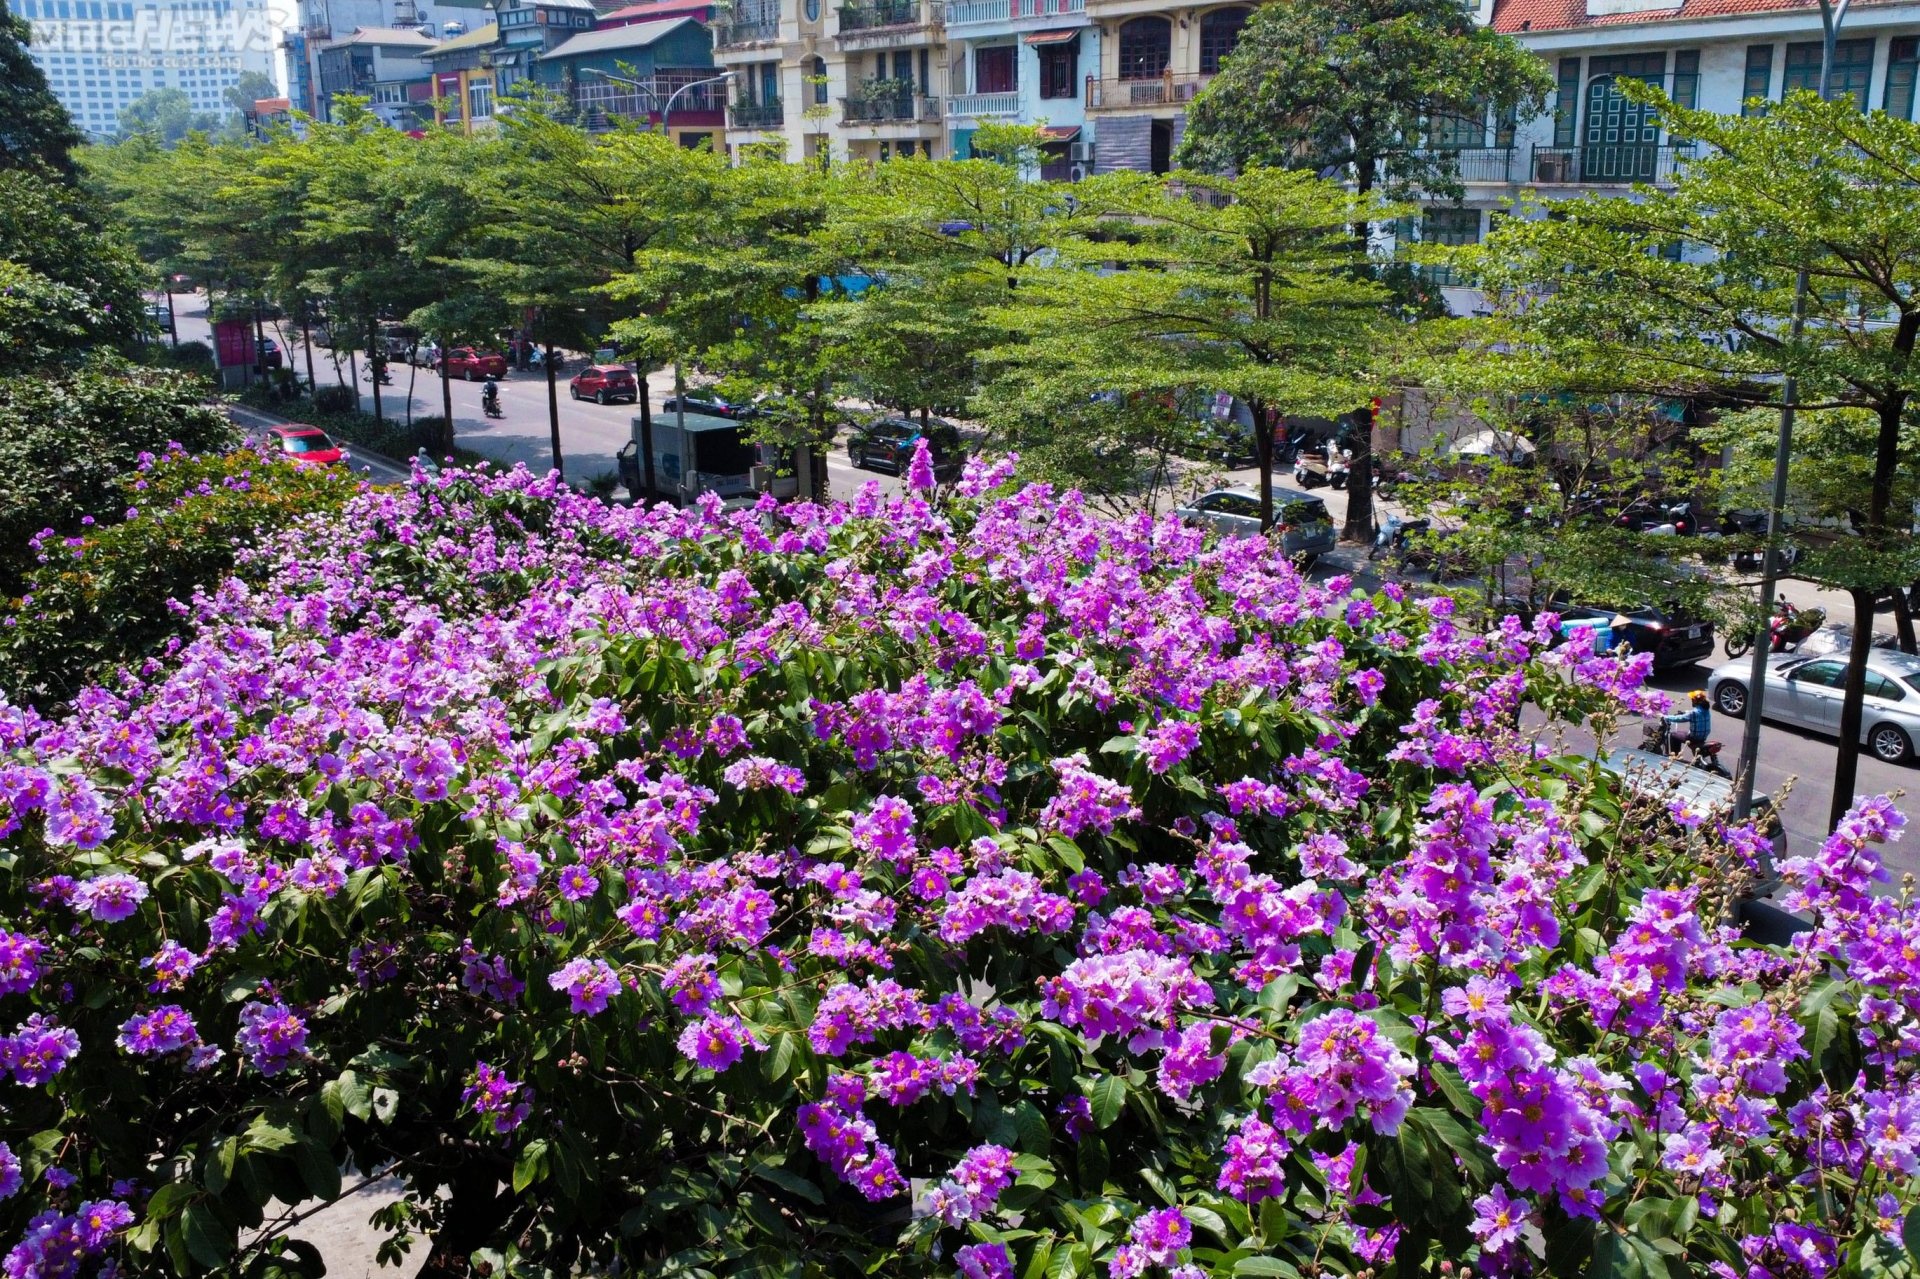 Hoa bằng lăng khoe sắc, nhuộm tím đường phố Hà Nội - 5